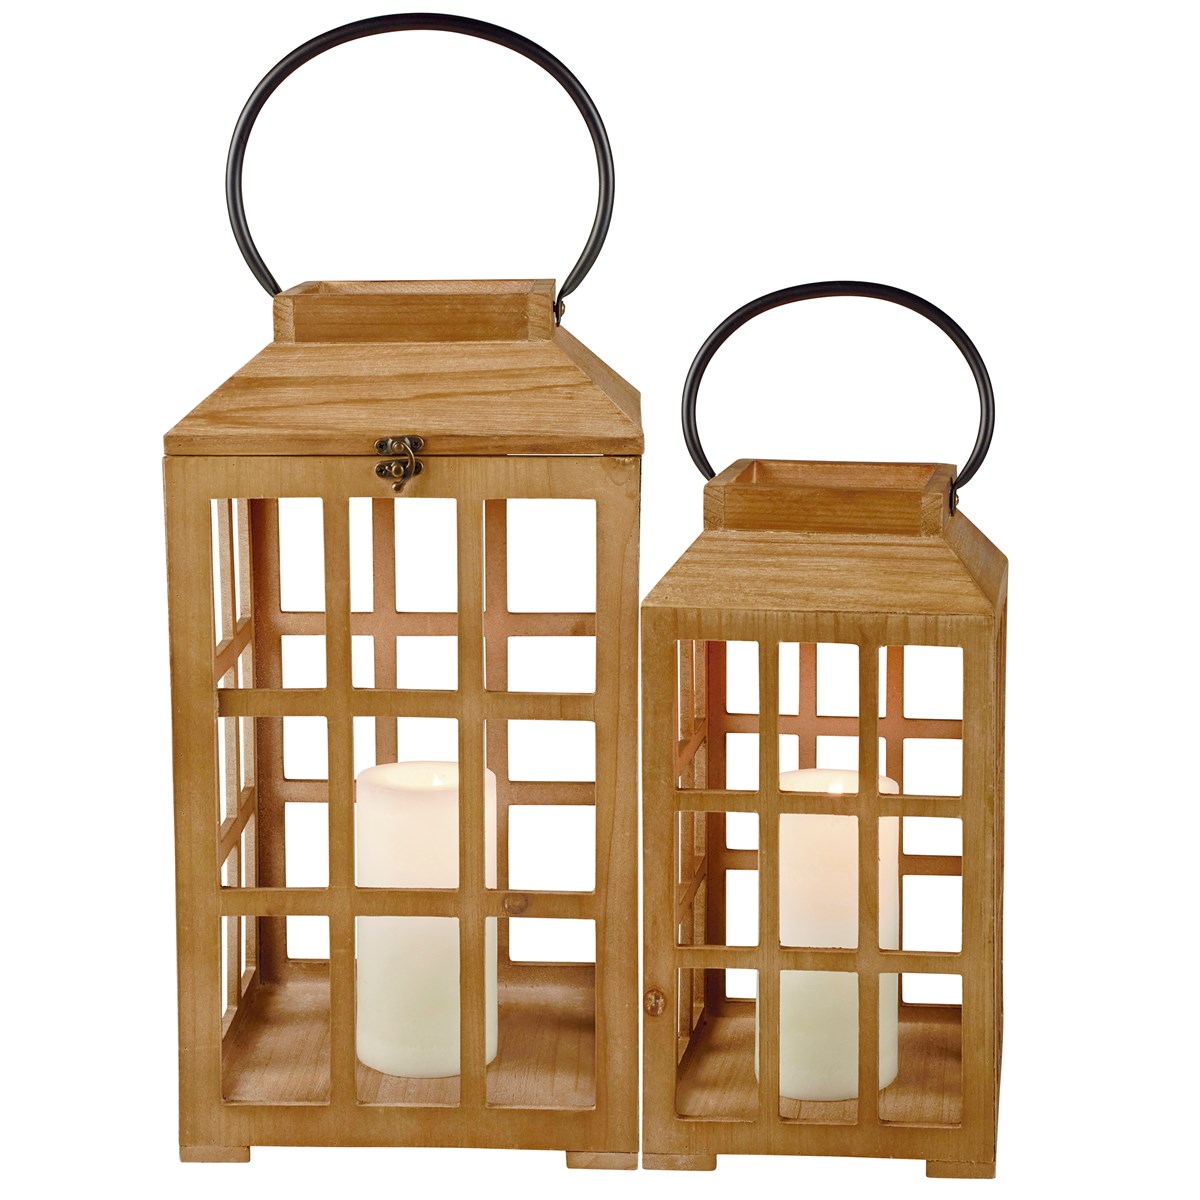 Wooden Lantern Set - Wood, Metal